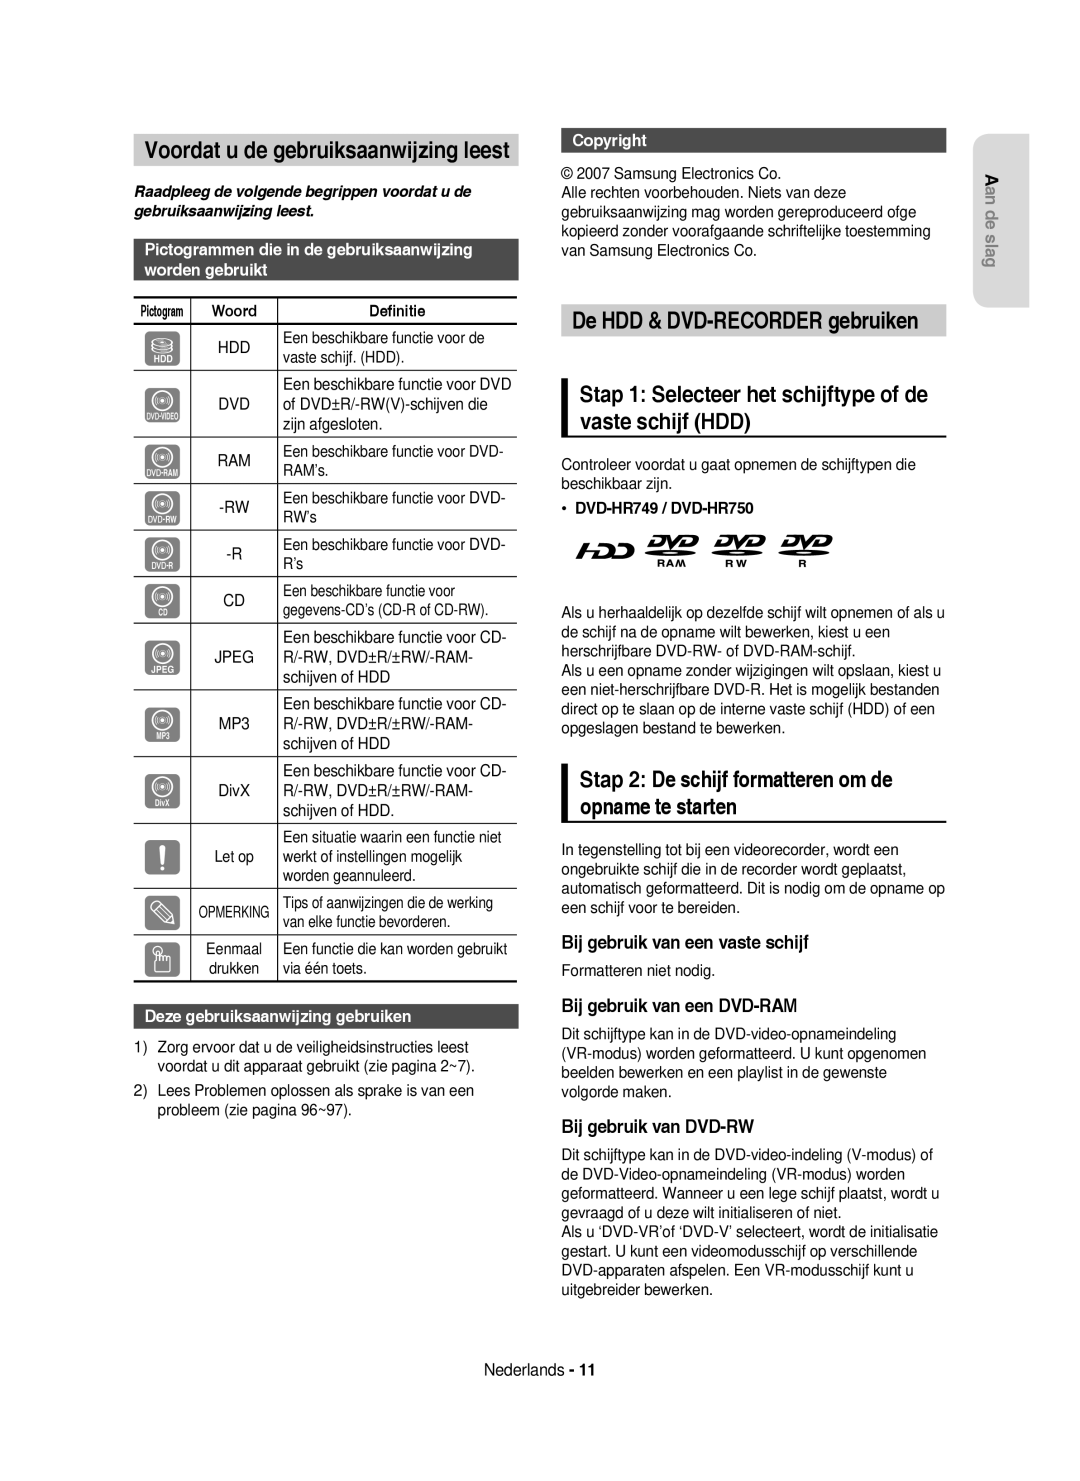 Samsung DVD-HR750/XEB manual Voordat u de gebruiksaanwijzing leest, Stap 1 Selecteer het schijftype of de vaste schijf HDD 